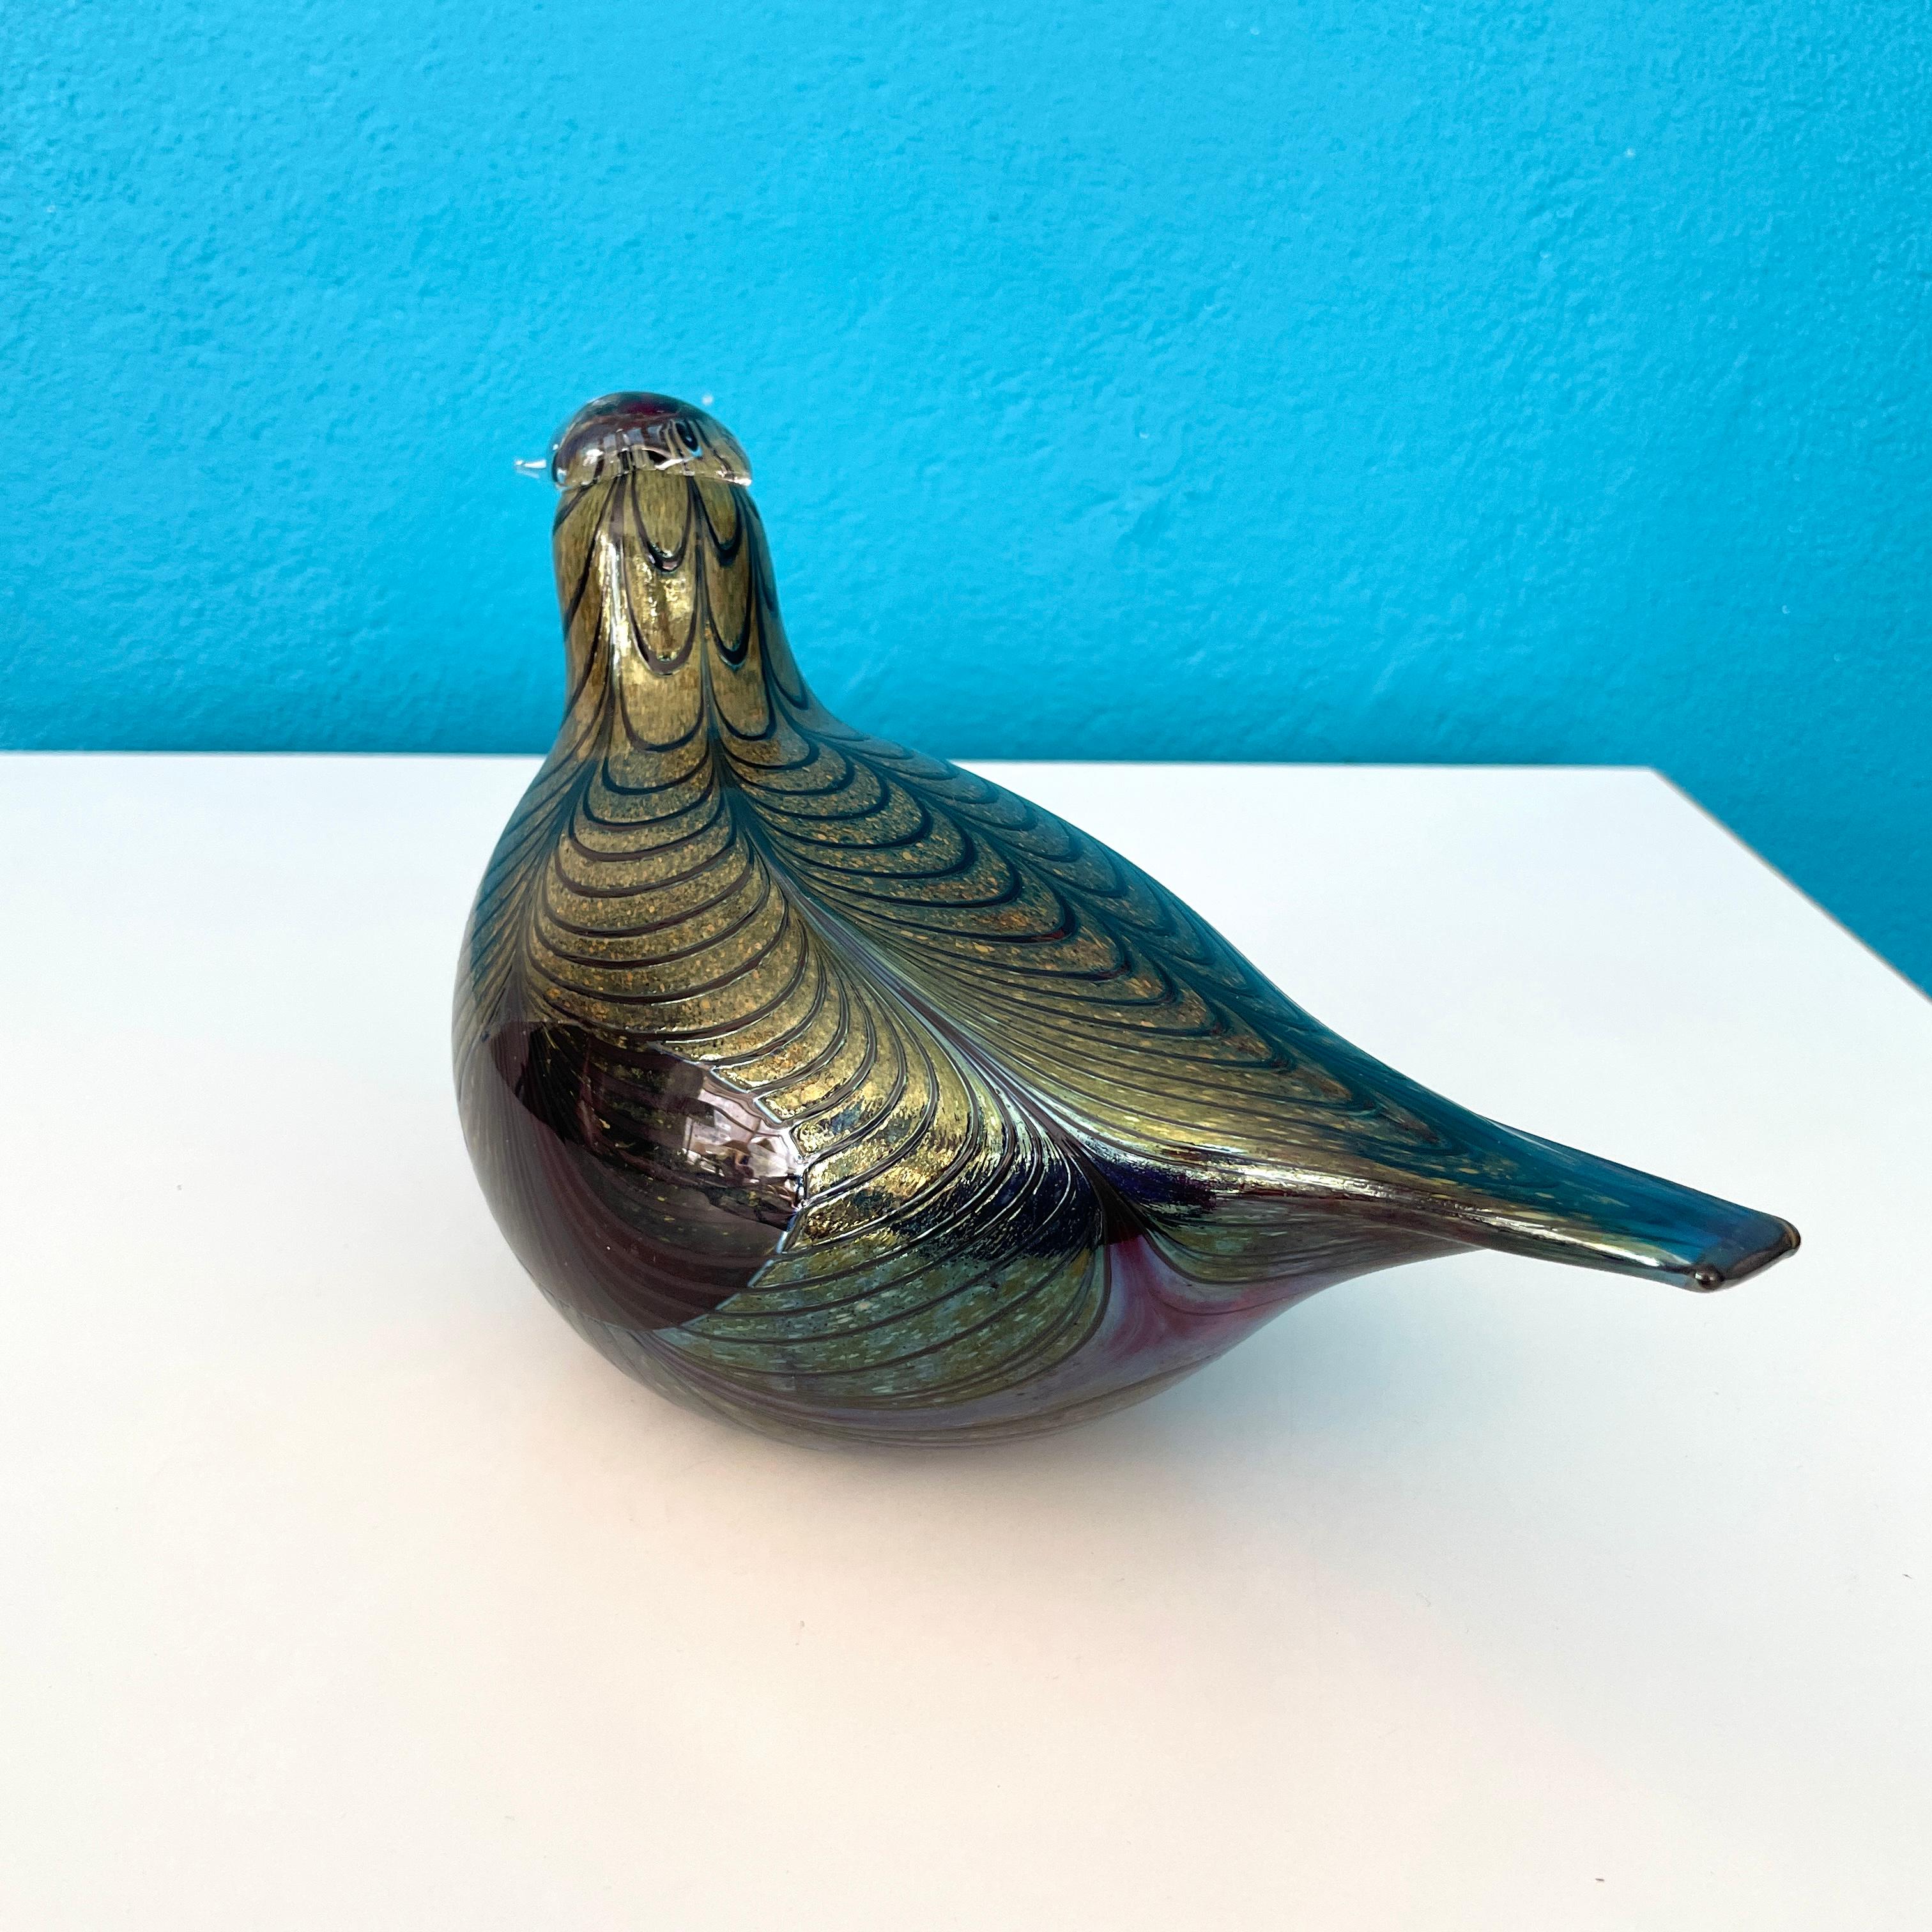 Big Art Glass Bird Entworfen von Oiva Tikka für Iittala Finnland. 

Abmessungen: 
Länge 26cm / 10.20in
Höhe 18cm / 7in
Breite 13cm / 5.1in

Gezeichnet 